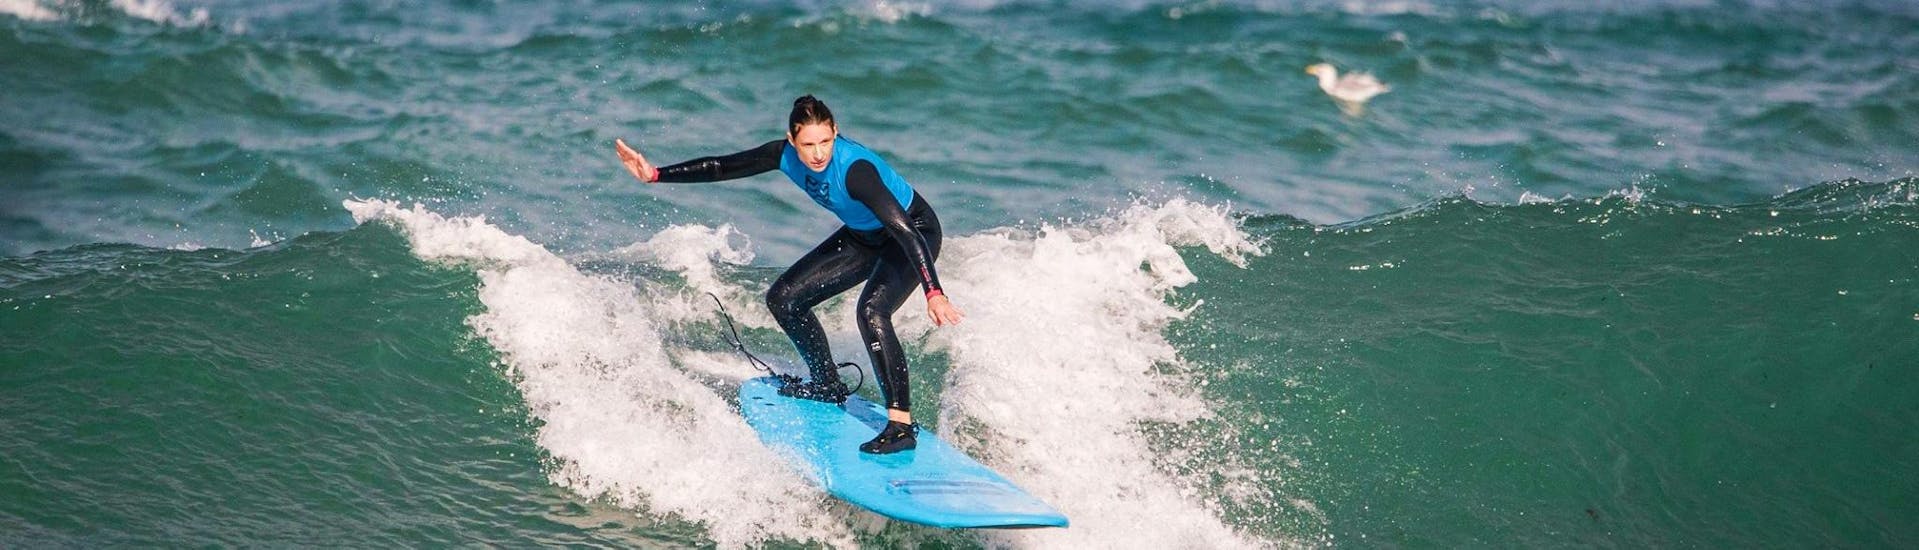 Lezioni di surf a Peniche da 2 anni per surfisti avanzati con Go4Surf Peniche.